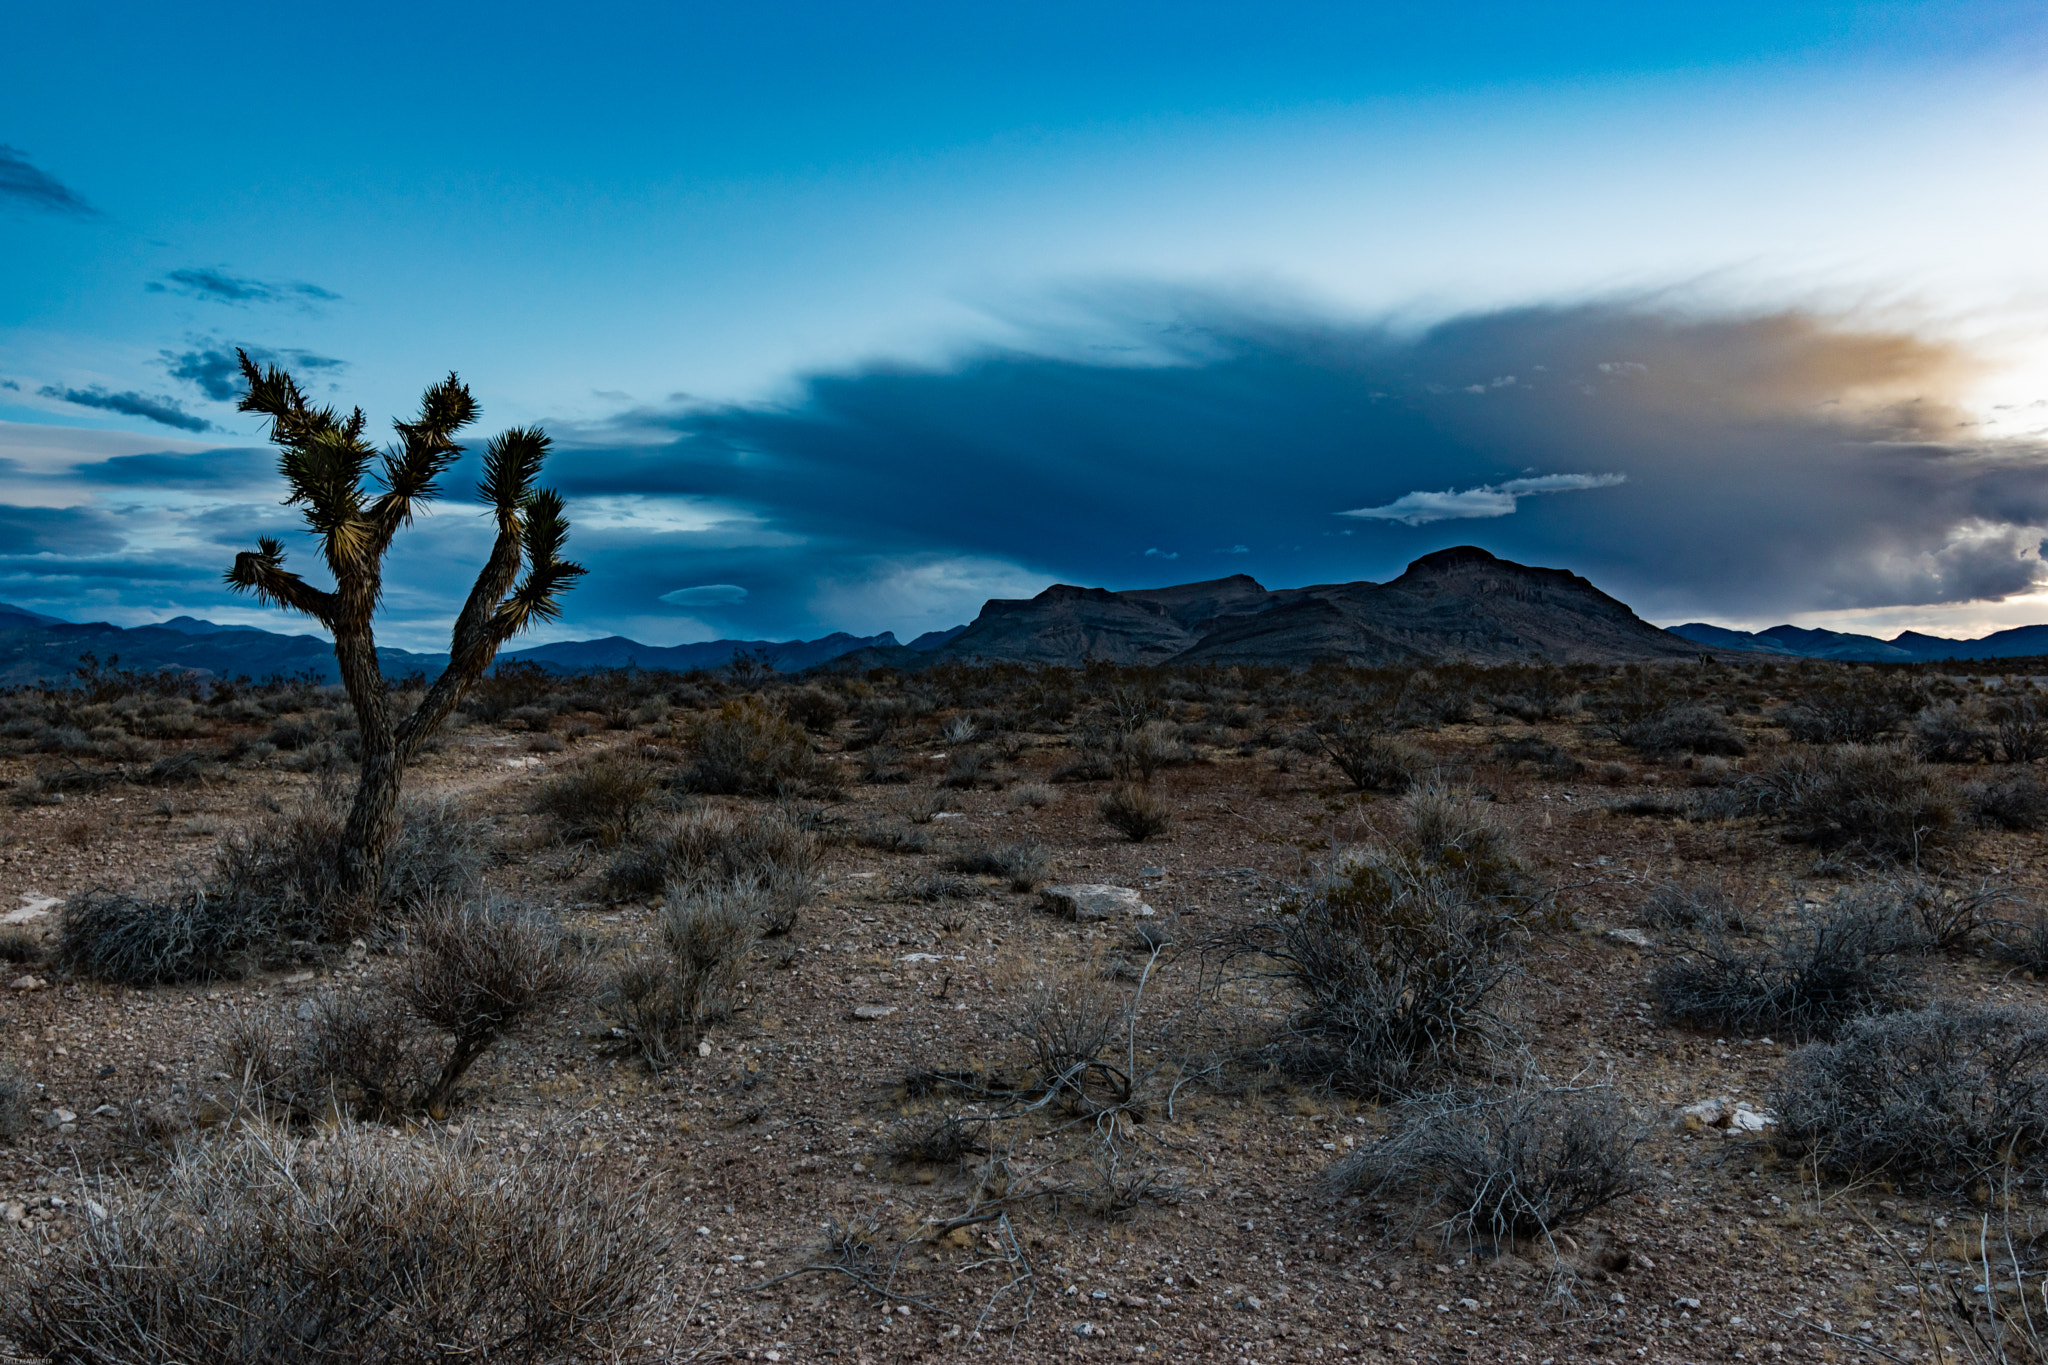 Nikon D5500 + Tokina AT-X 11-20 F2.8 PRO DX (AF 11-20mm f/2.8) sample photo. Desert landscape in nevada photography